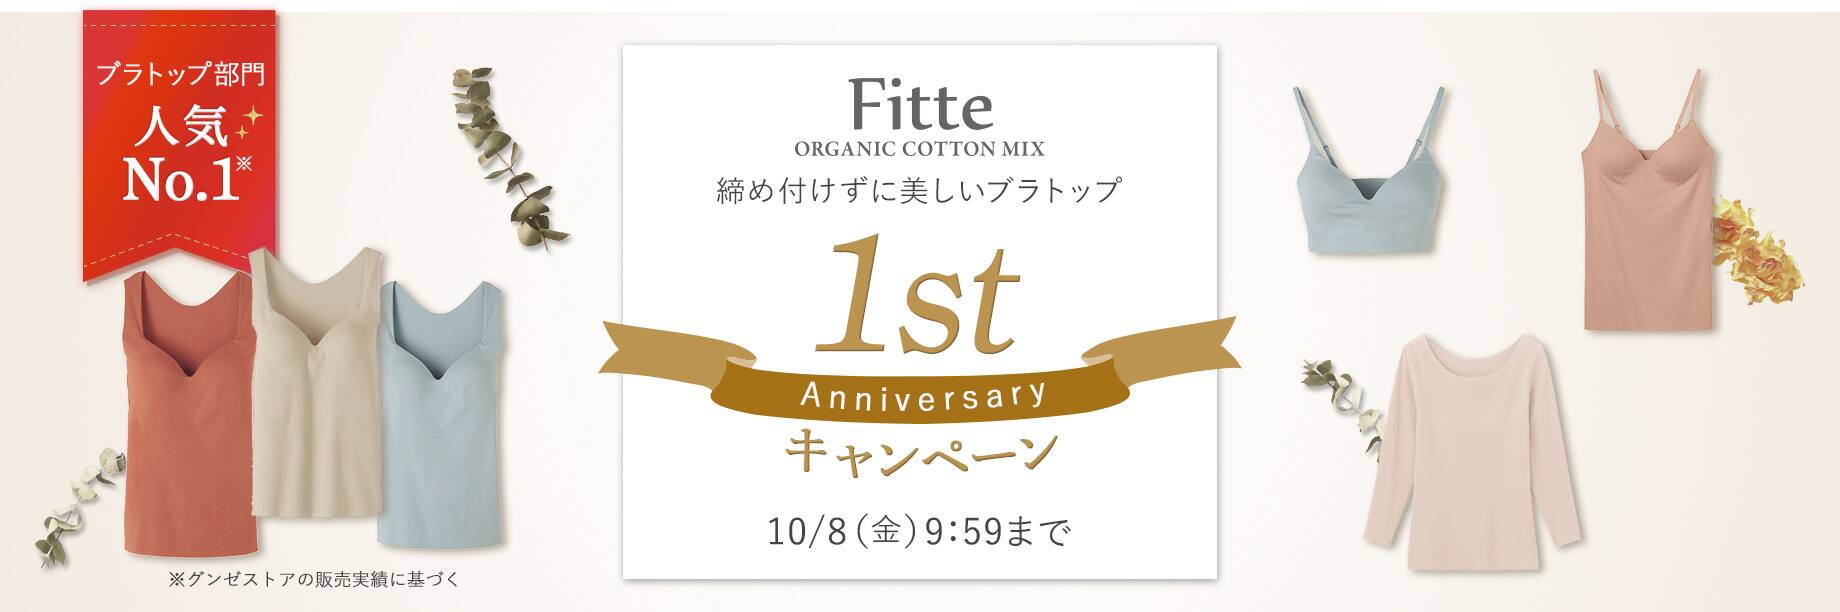 Fitte 1st Anniversaryキャンペーン